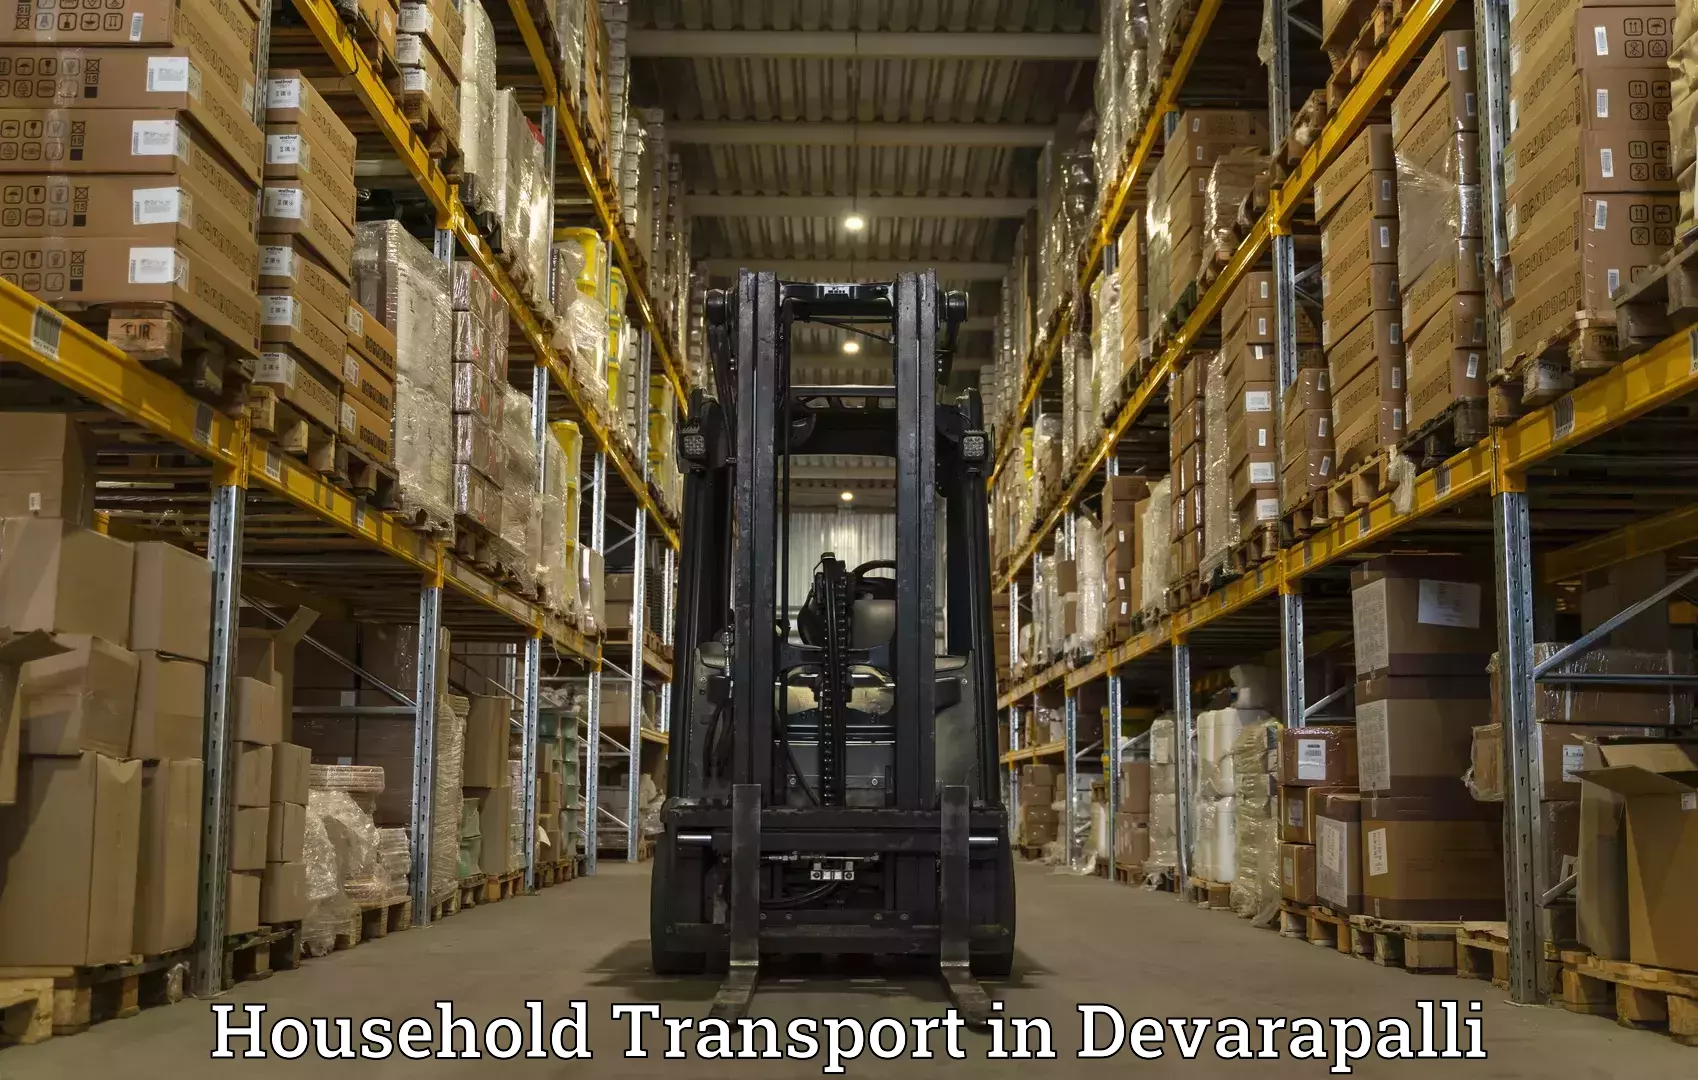 Online household goods transport in Devarapalli